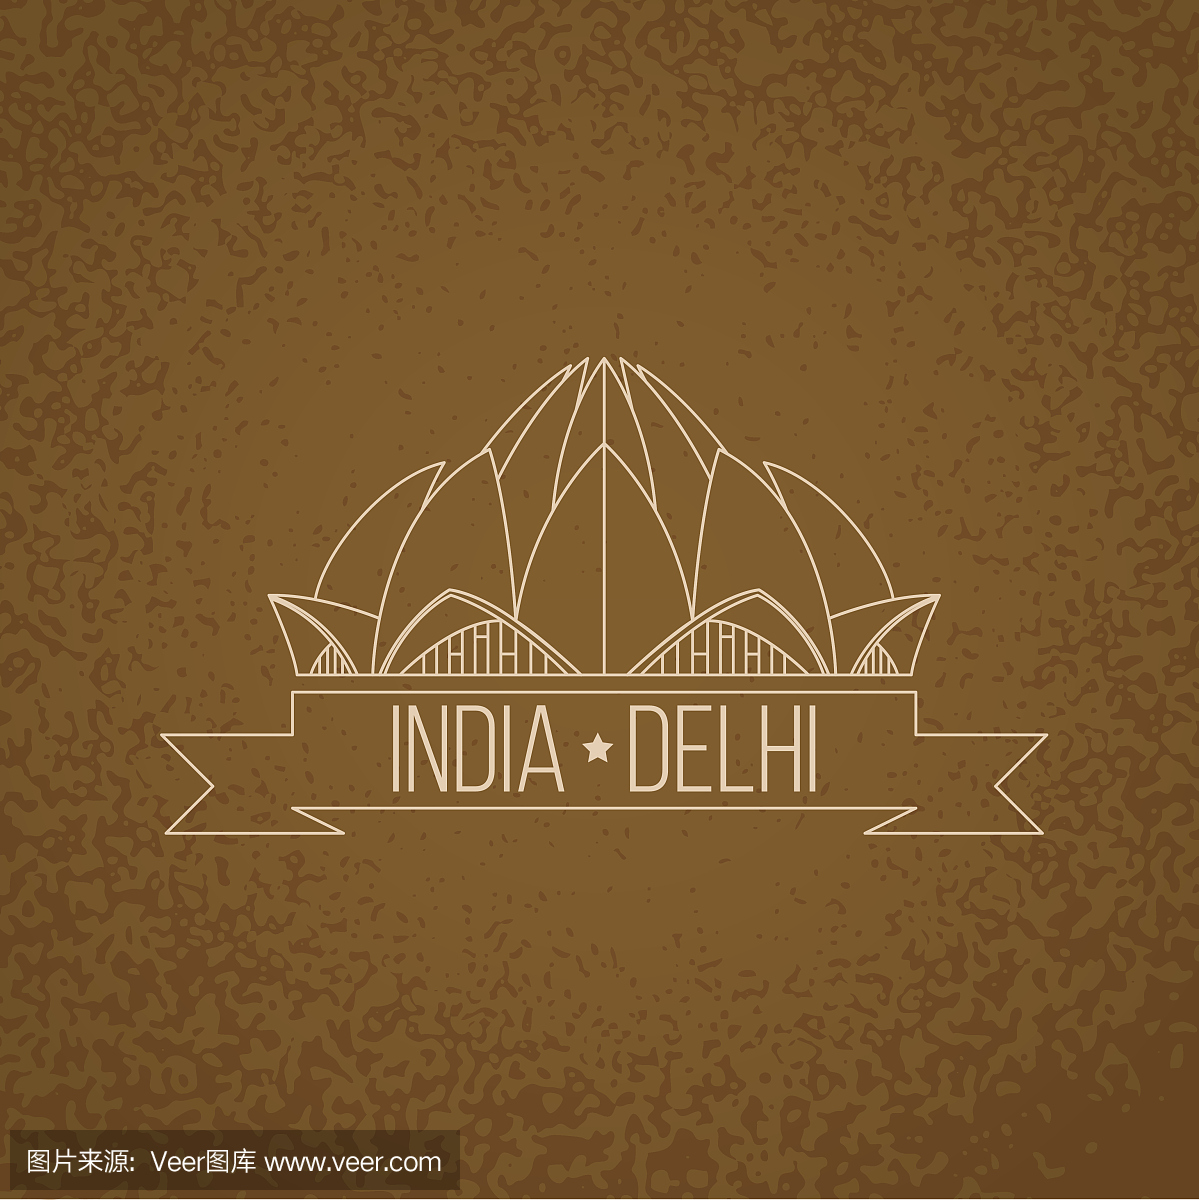 莲花庙 - 印度,德里的象征